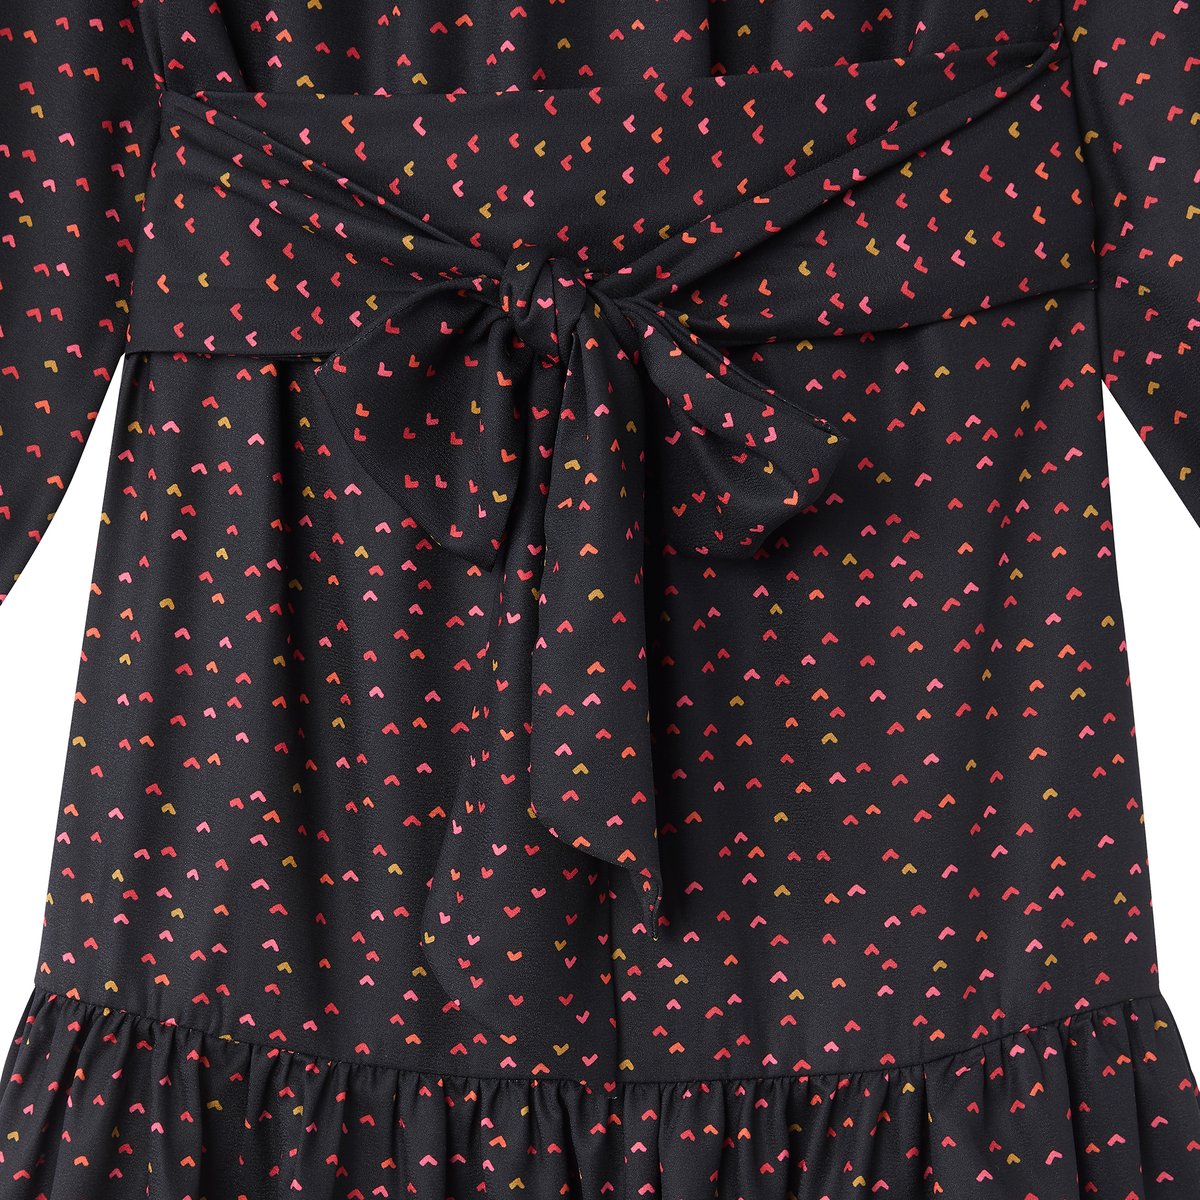 Платье La Redoute С рисунком и вырезом-лодочкой 42 (FR) - 48 (RUS) черный, размер 42 (FR) - 48 (RUS) С рисунком и вырезом-лодочкой 42 (FR) - 48 (RUS) черный - фото 2